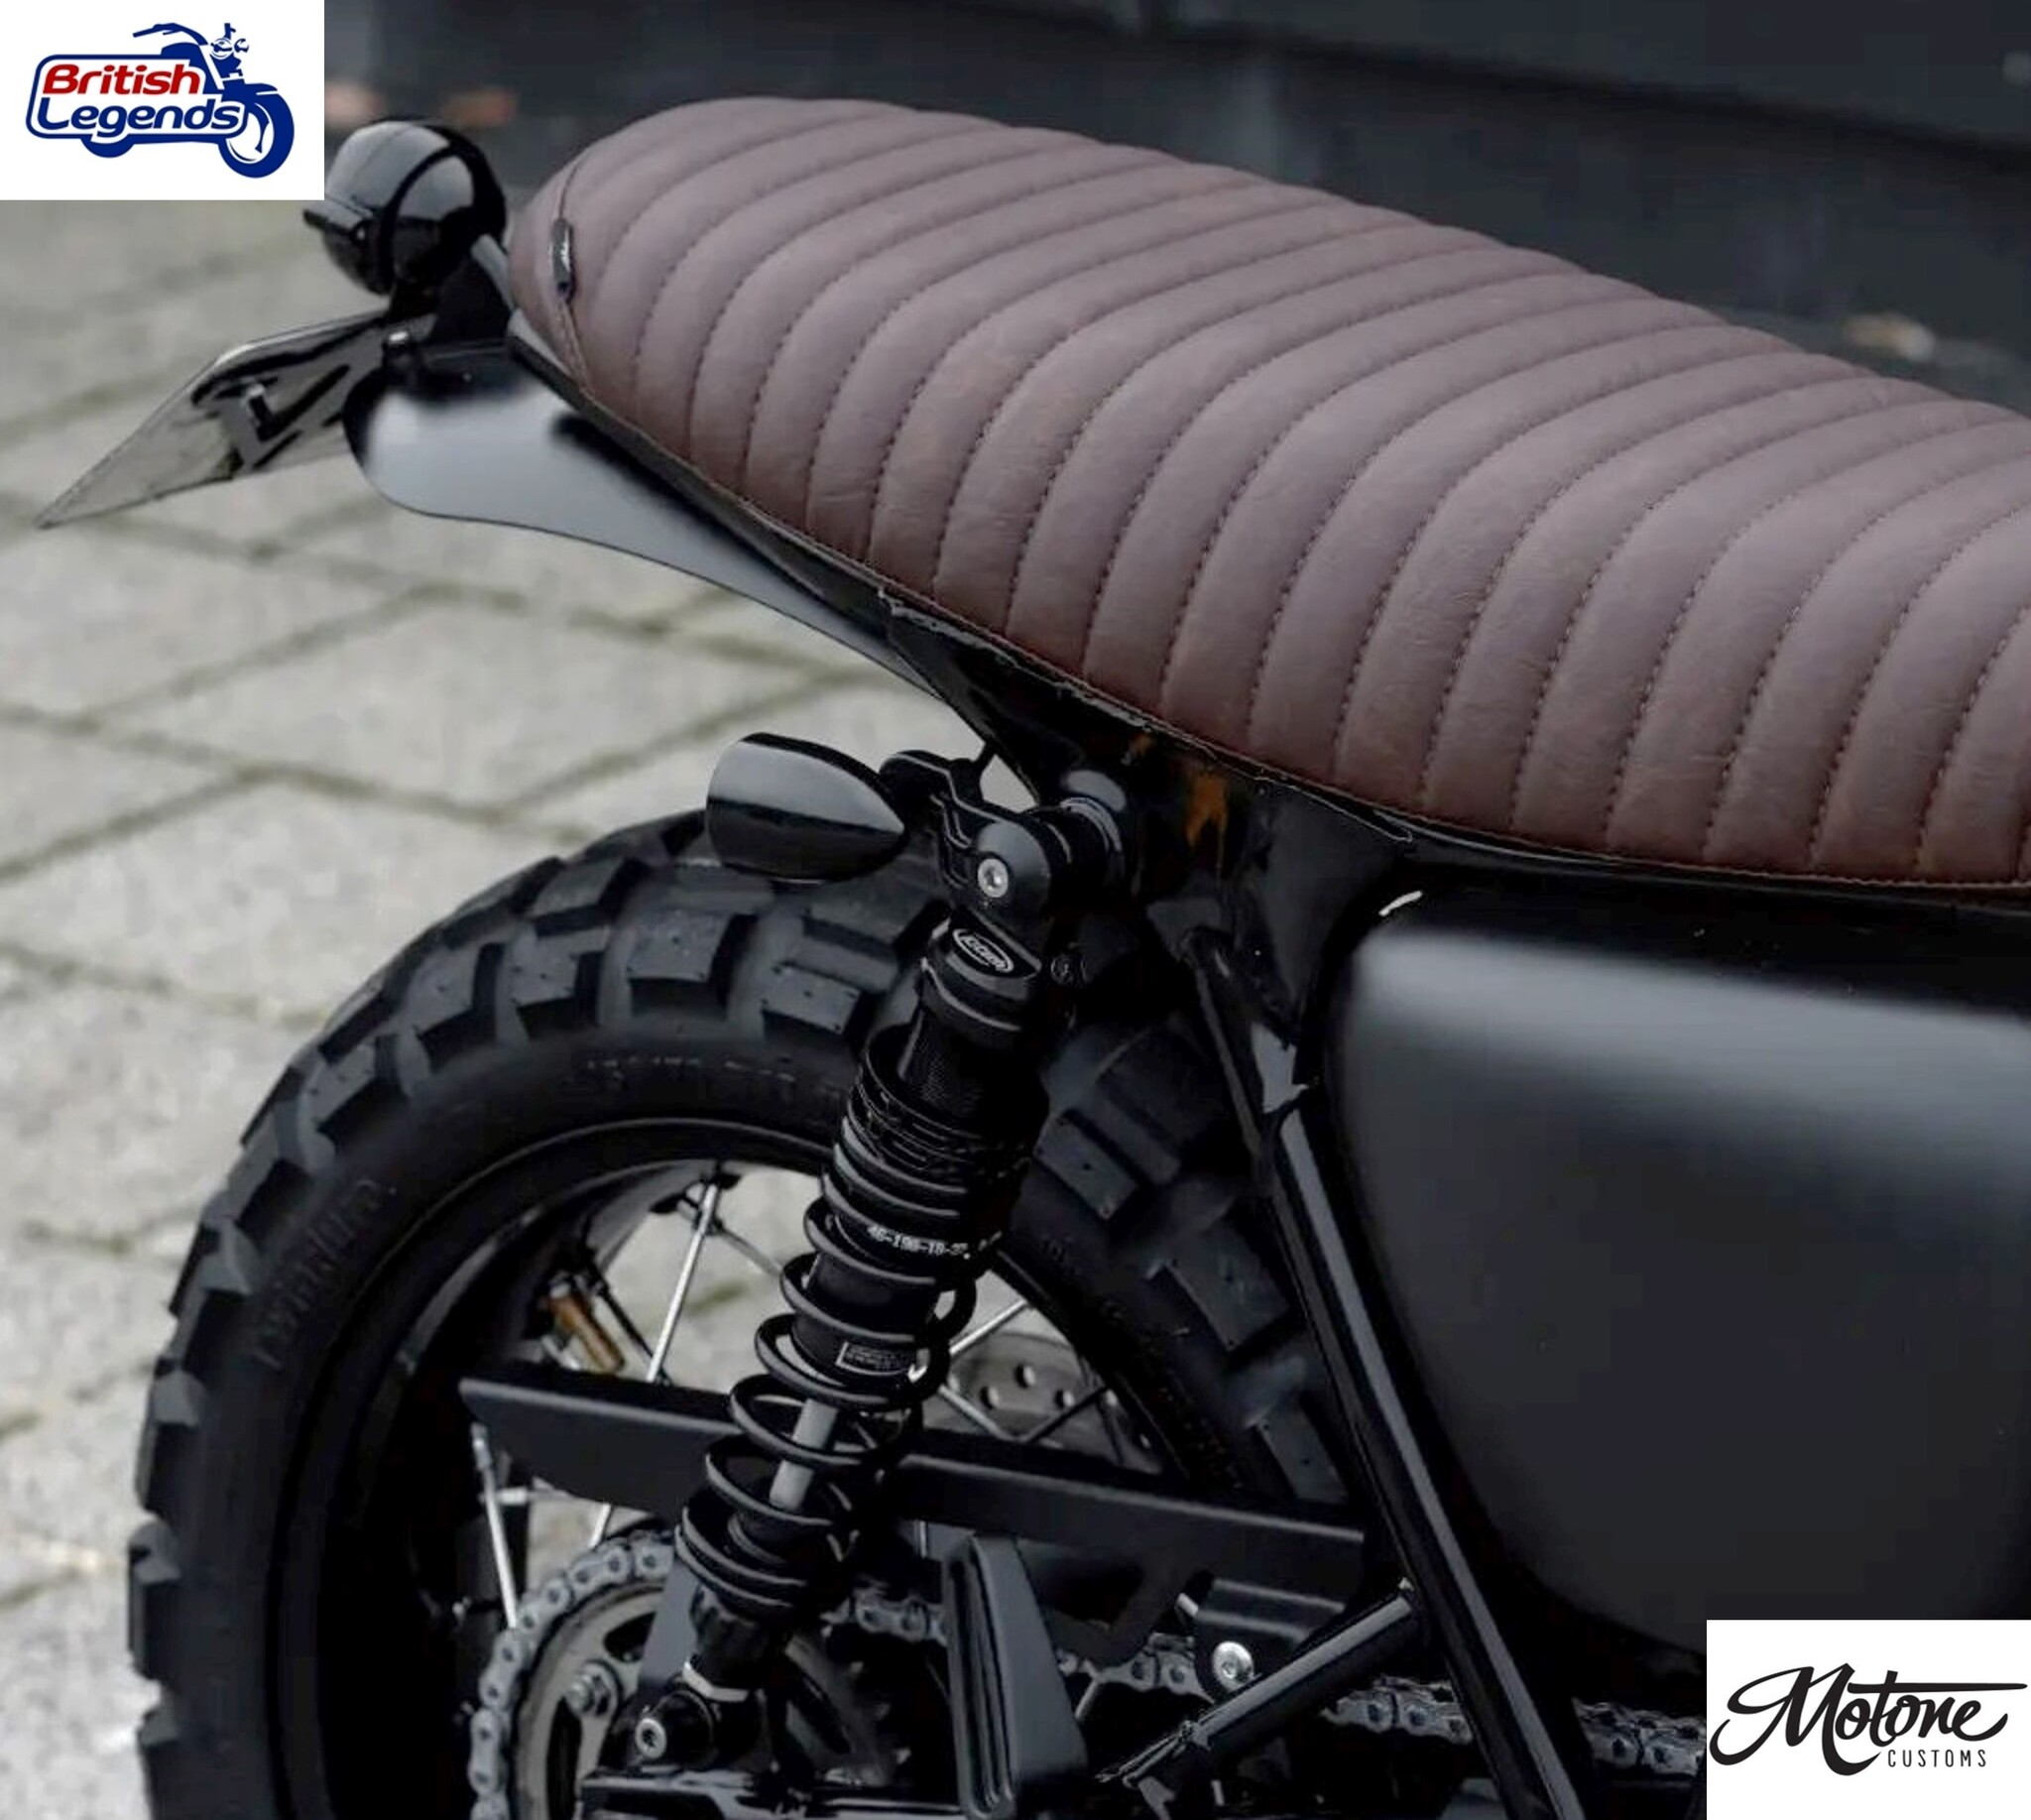 Clignotants rond led aluminium noir mat avec grille - paire - Vente en  ligne de Clignotants et toutes Pièces Moto - Zombie Bikes Concept